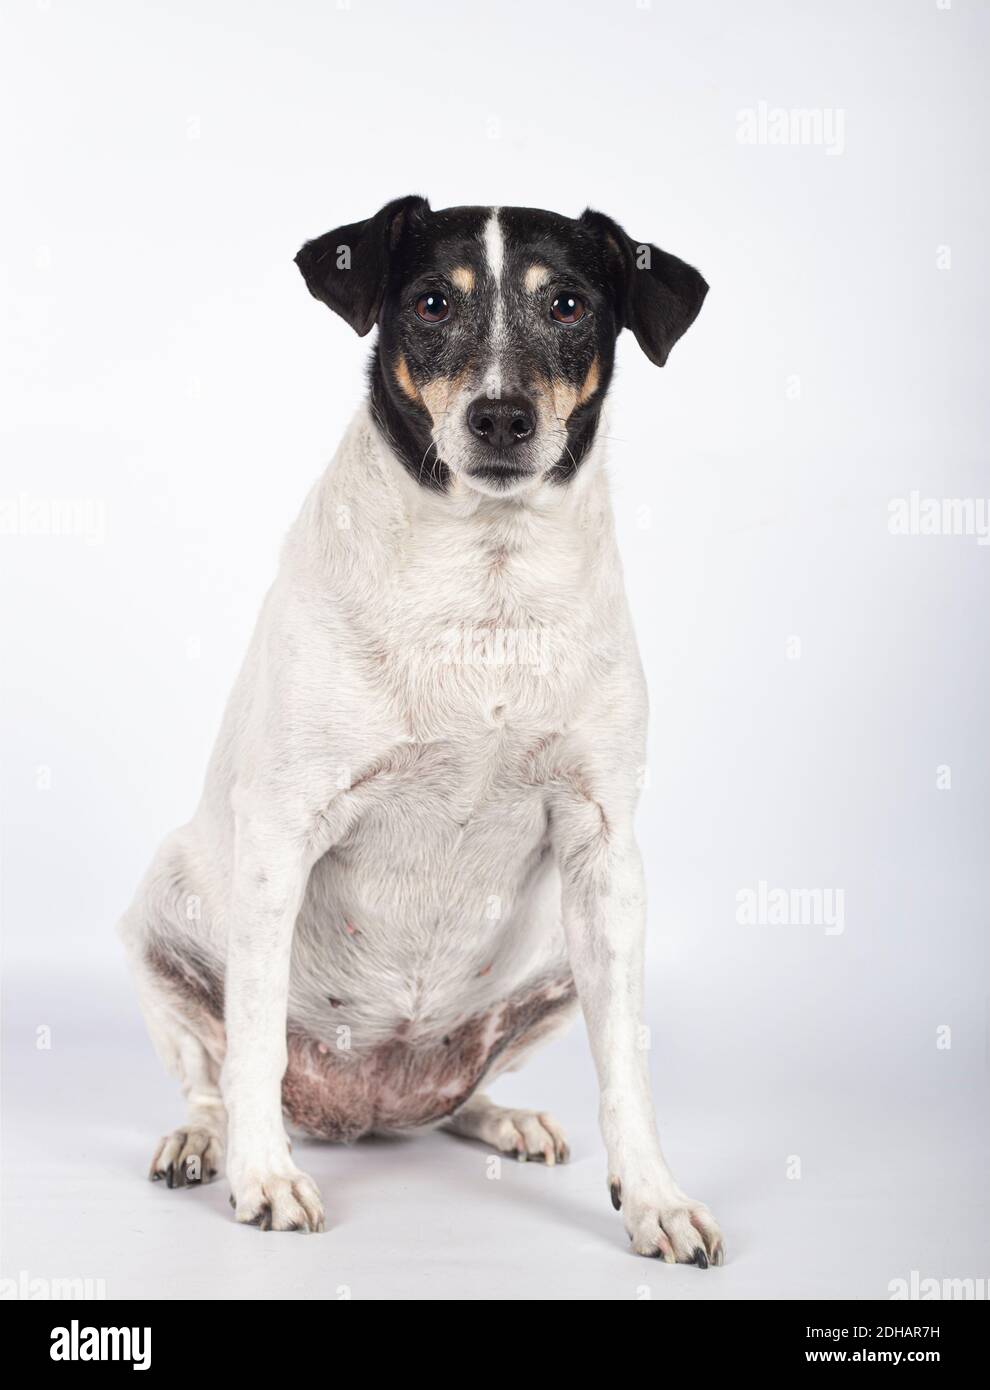 Portrait d'un chien errant en studio photo sur fond blanc avec espace de copie. Journée internationale des animaux sans abri Banque D'Images